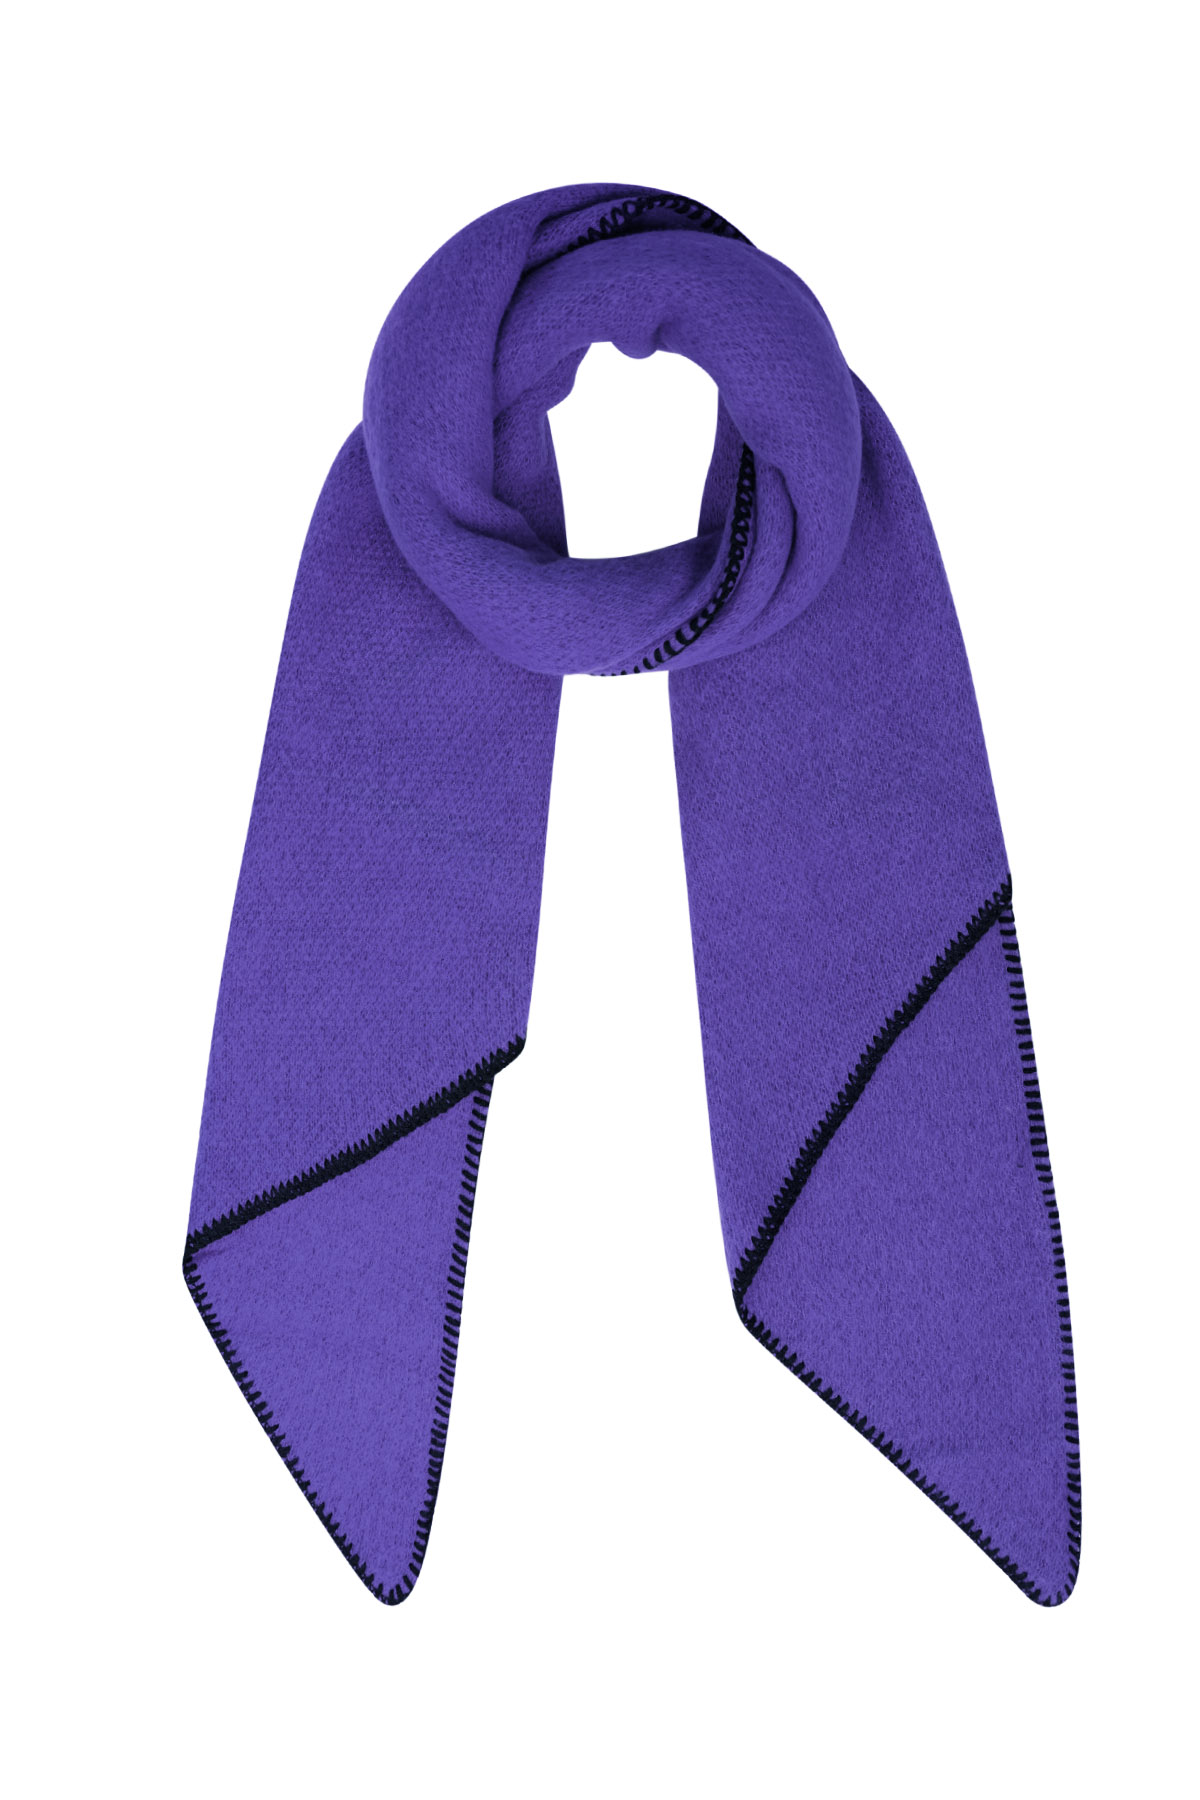 Bufanda de invierno monocolor con costuras negras - violeta h5 